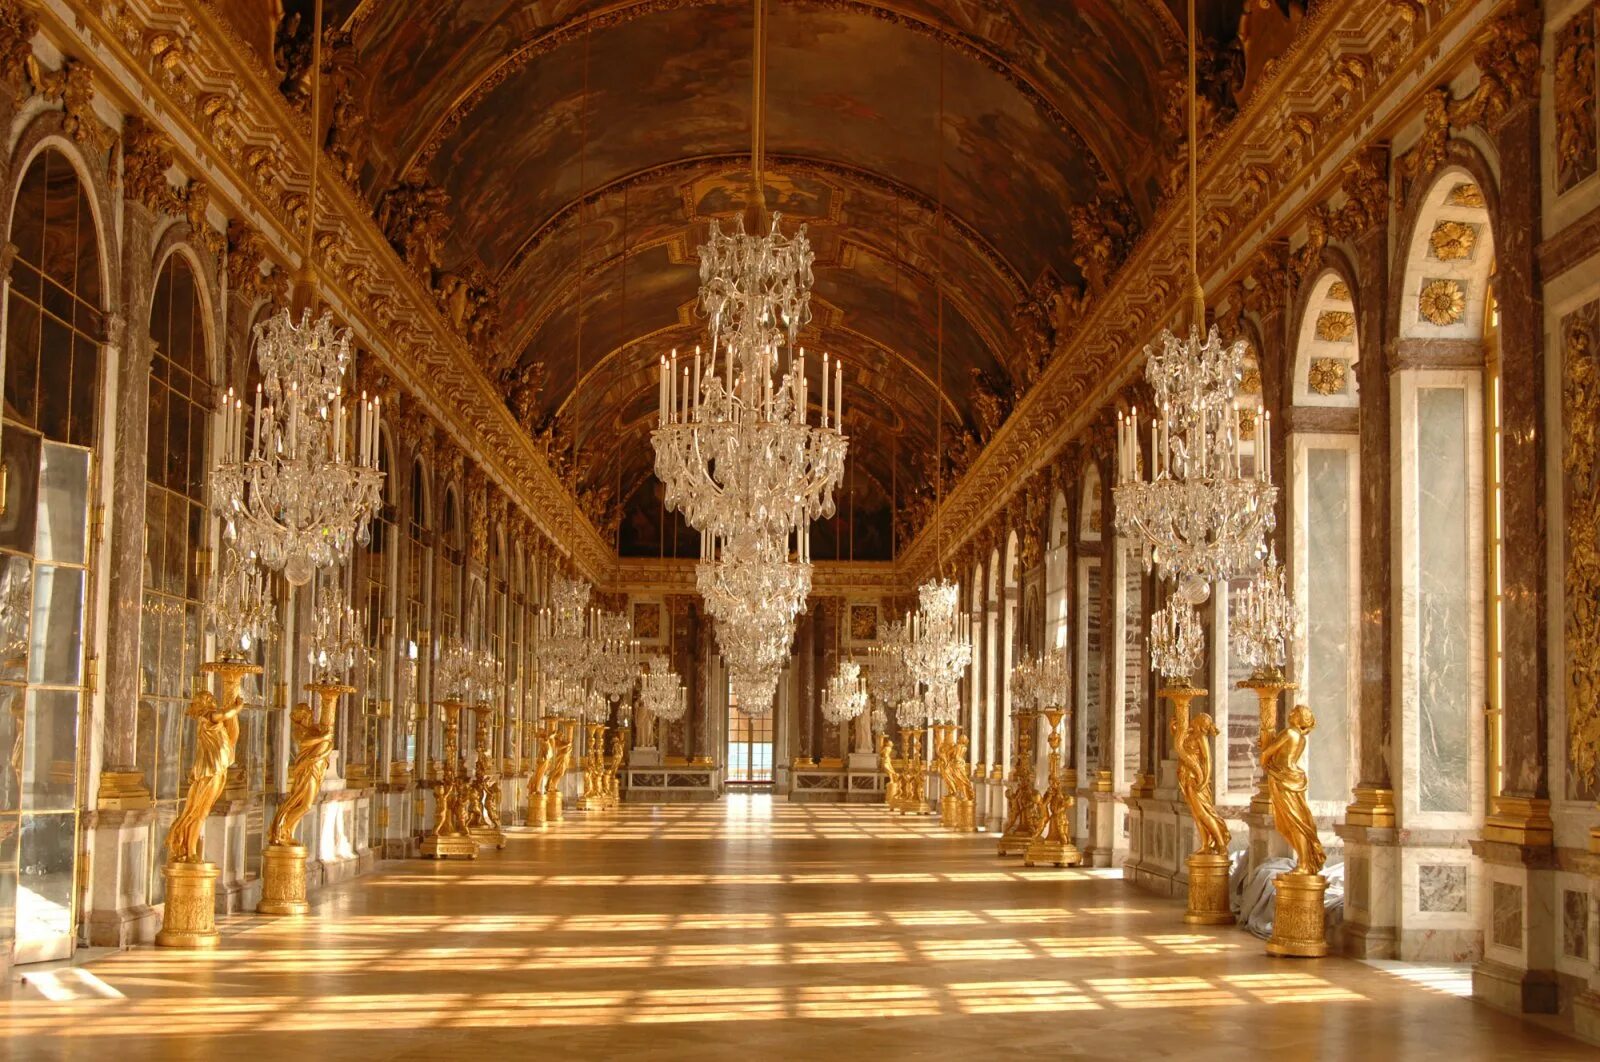 Версальский дворец, Версаль дворец Версаля. Версальский дворец Барокко. Версальский дворец Анфилада залов. Зеркальная галерея Версальского дворца. Версаль интерьер